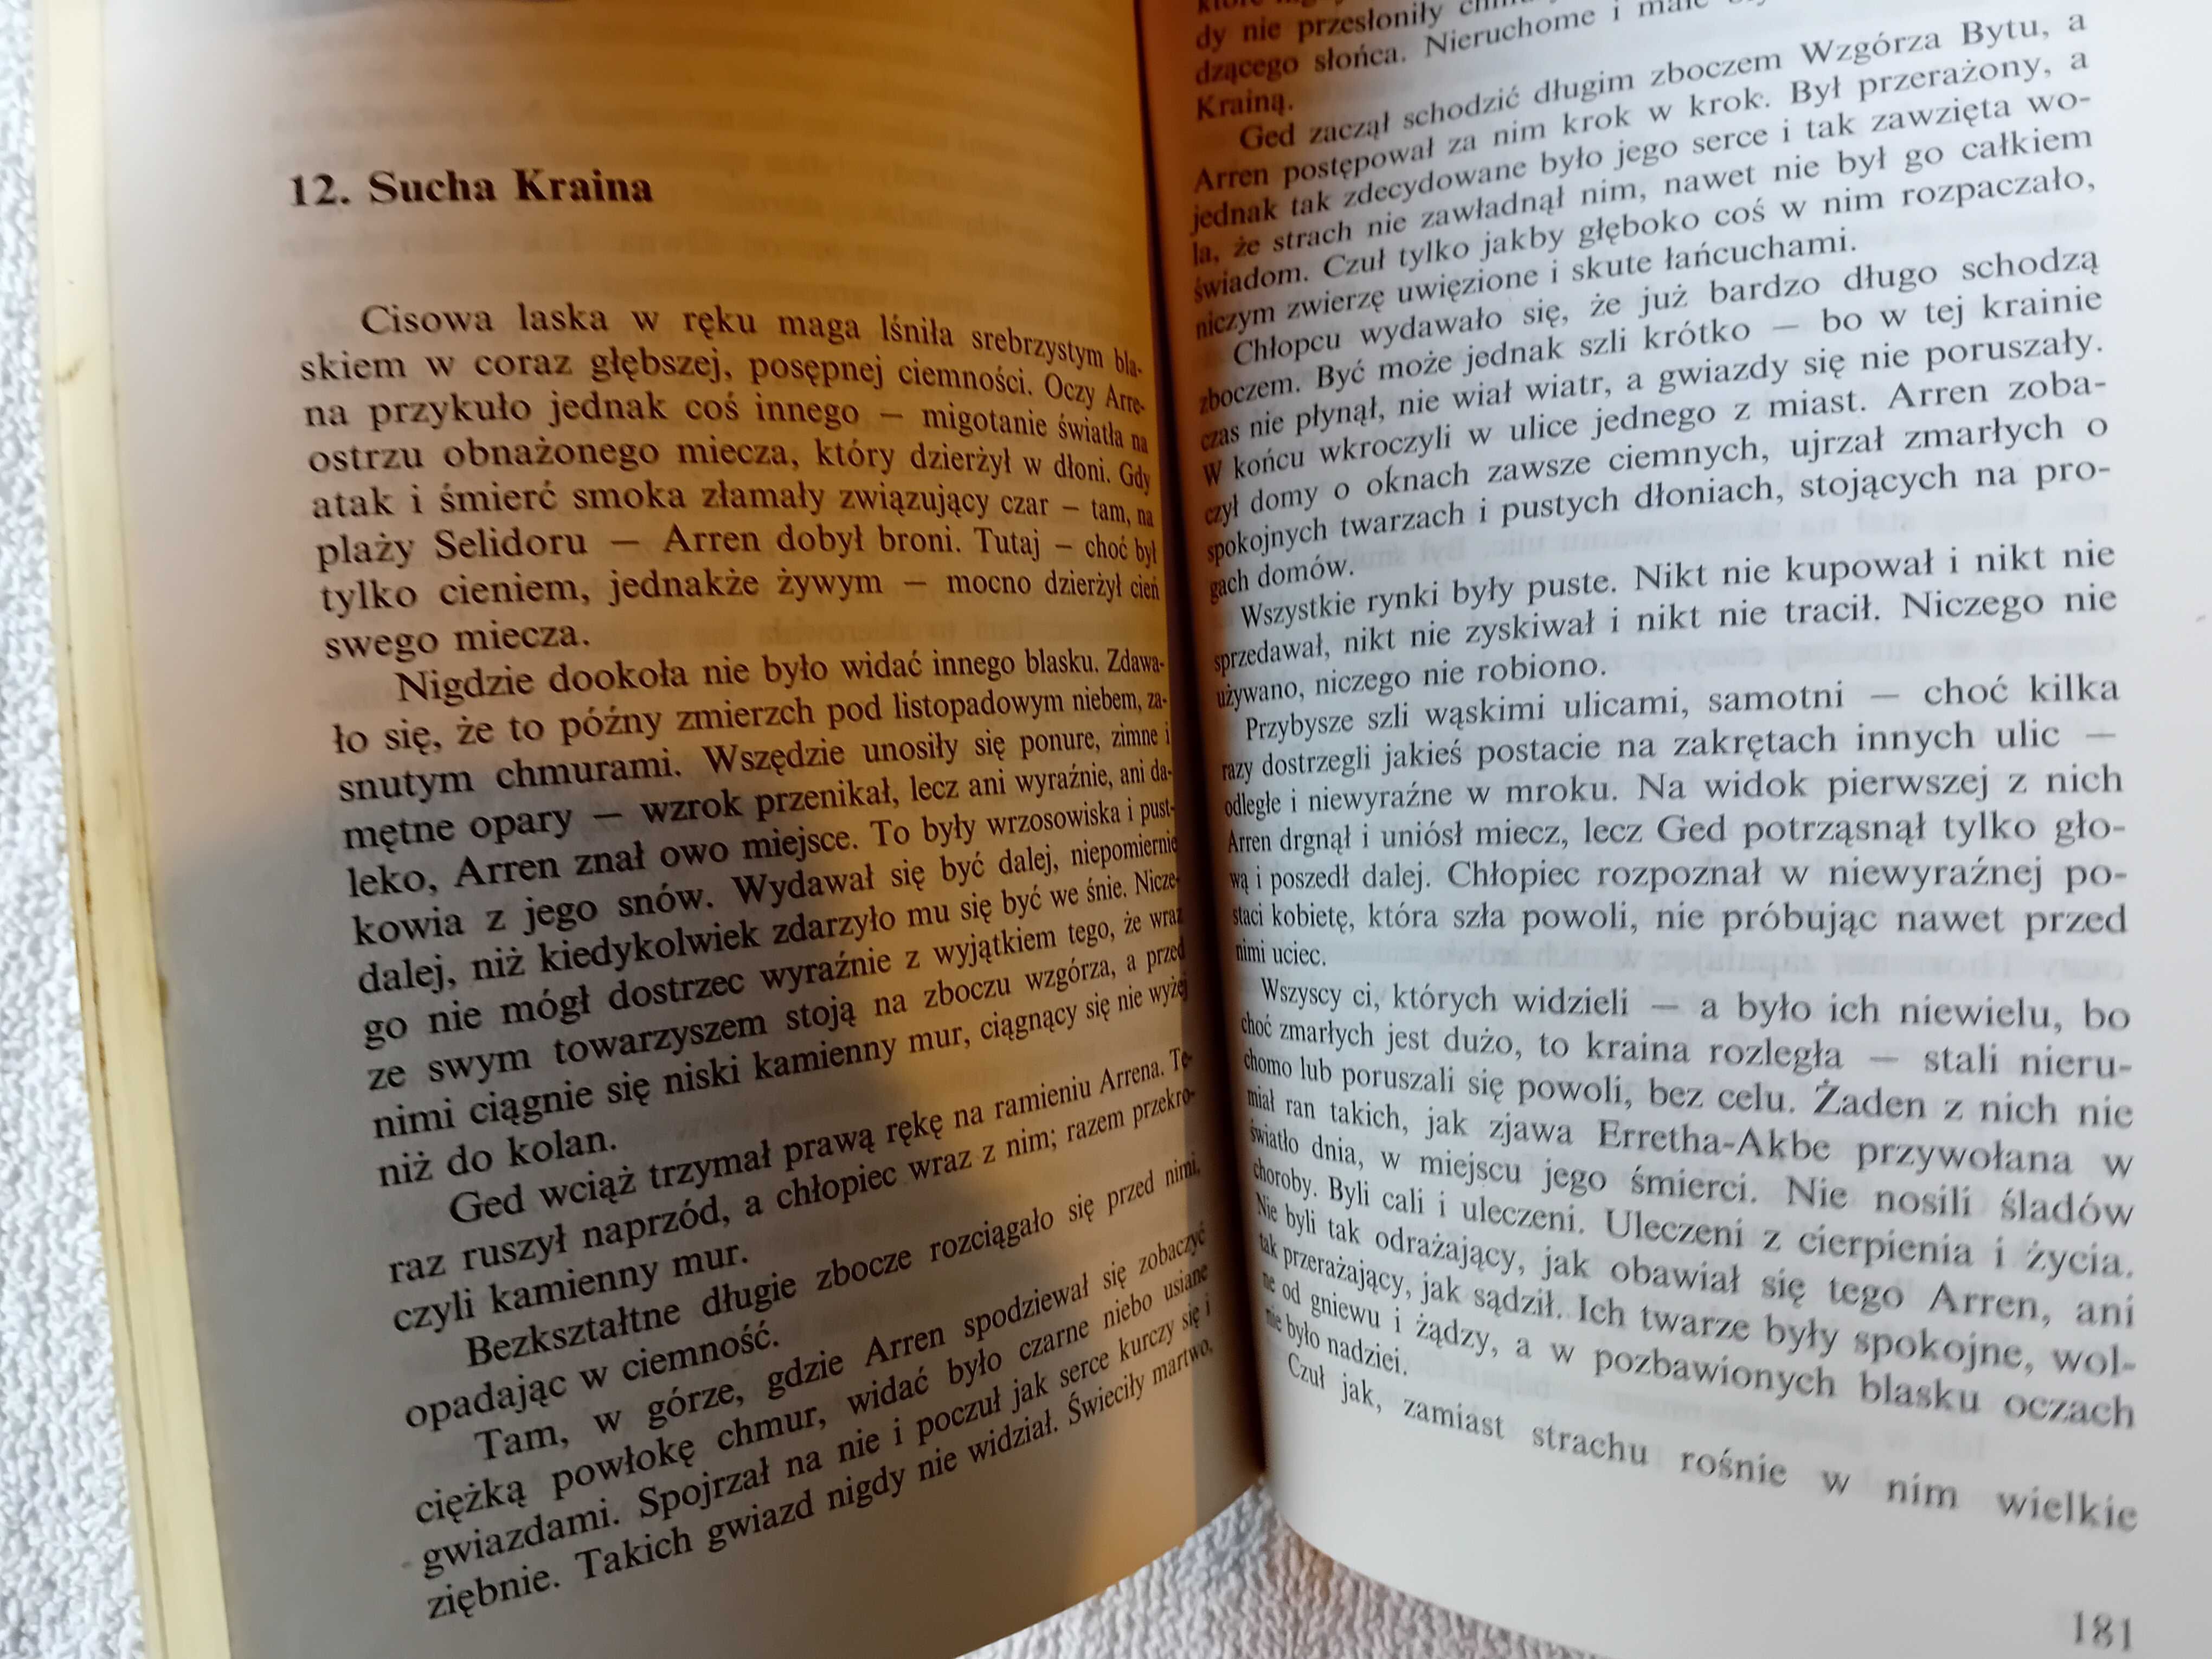 Ursula K. Le Guinn. Najdalszy brzeg. Wydanie I, 1991 r.